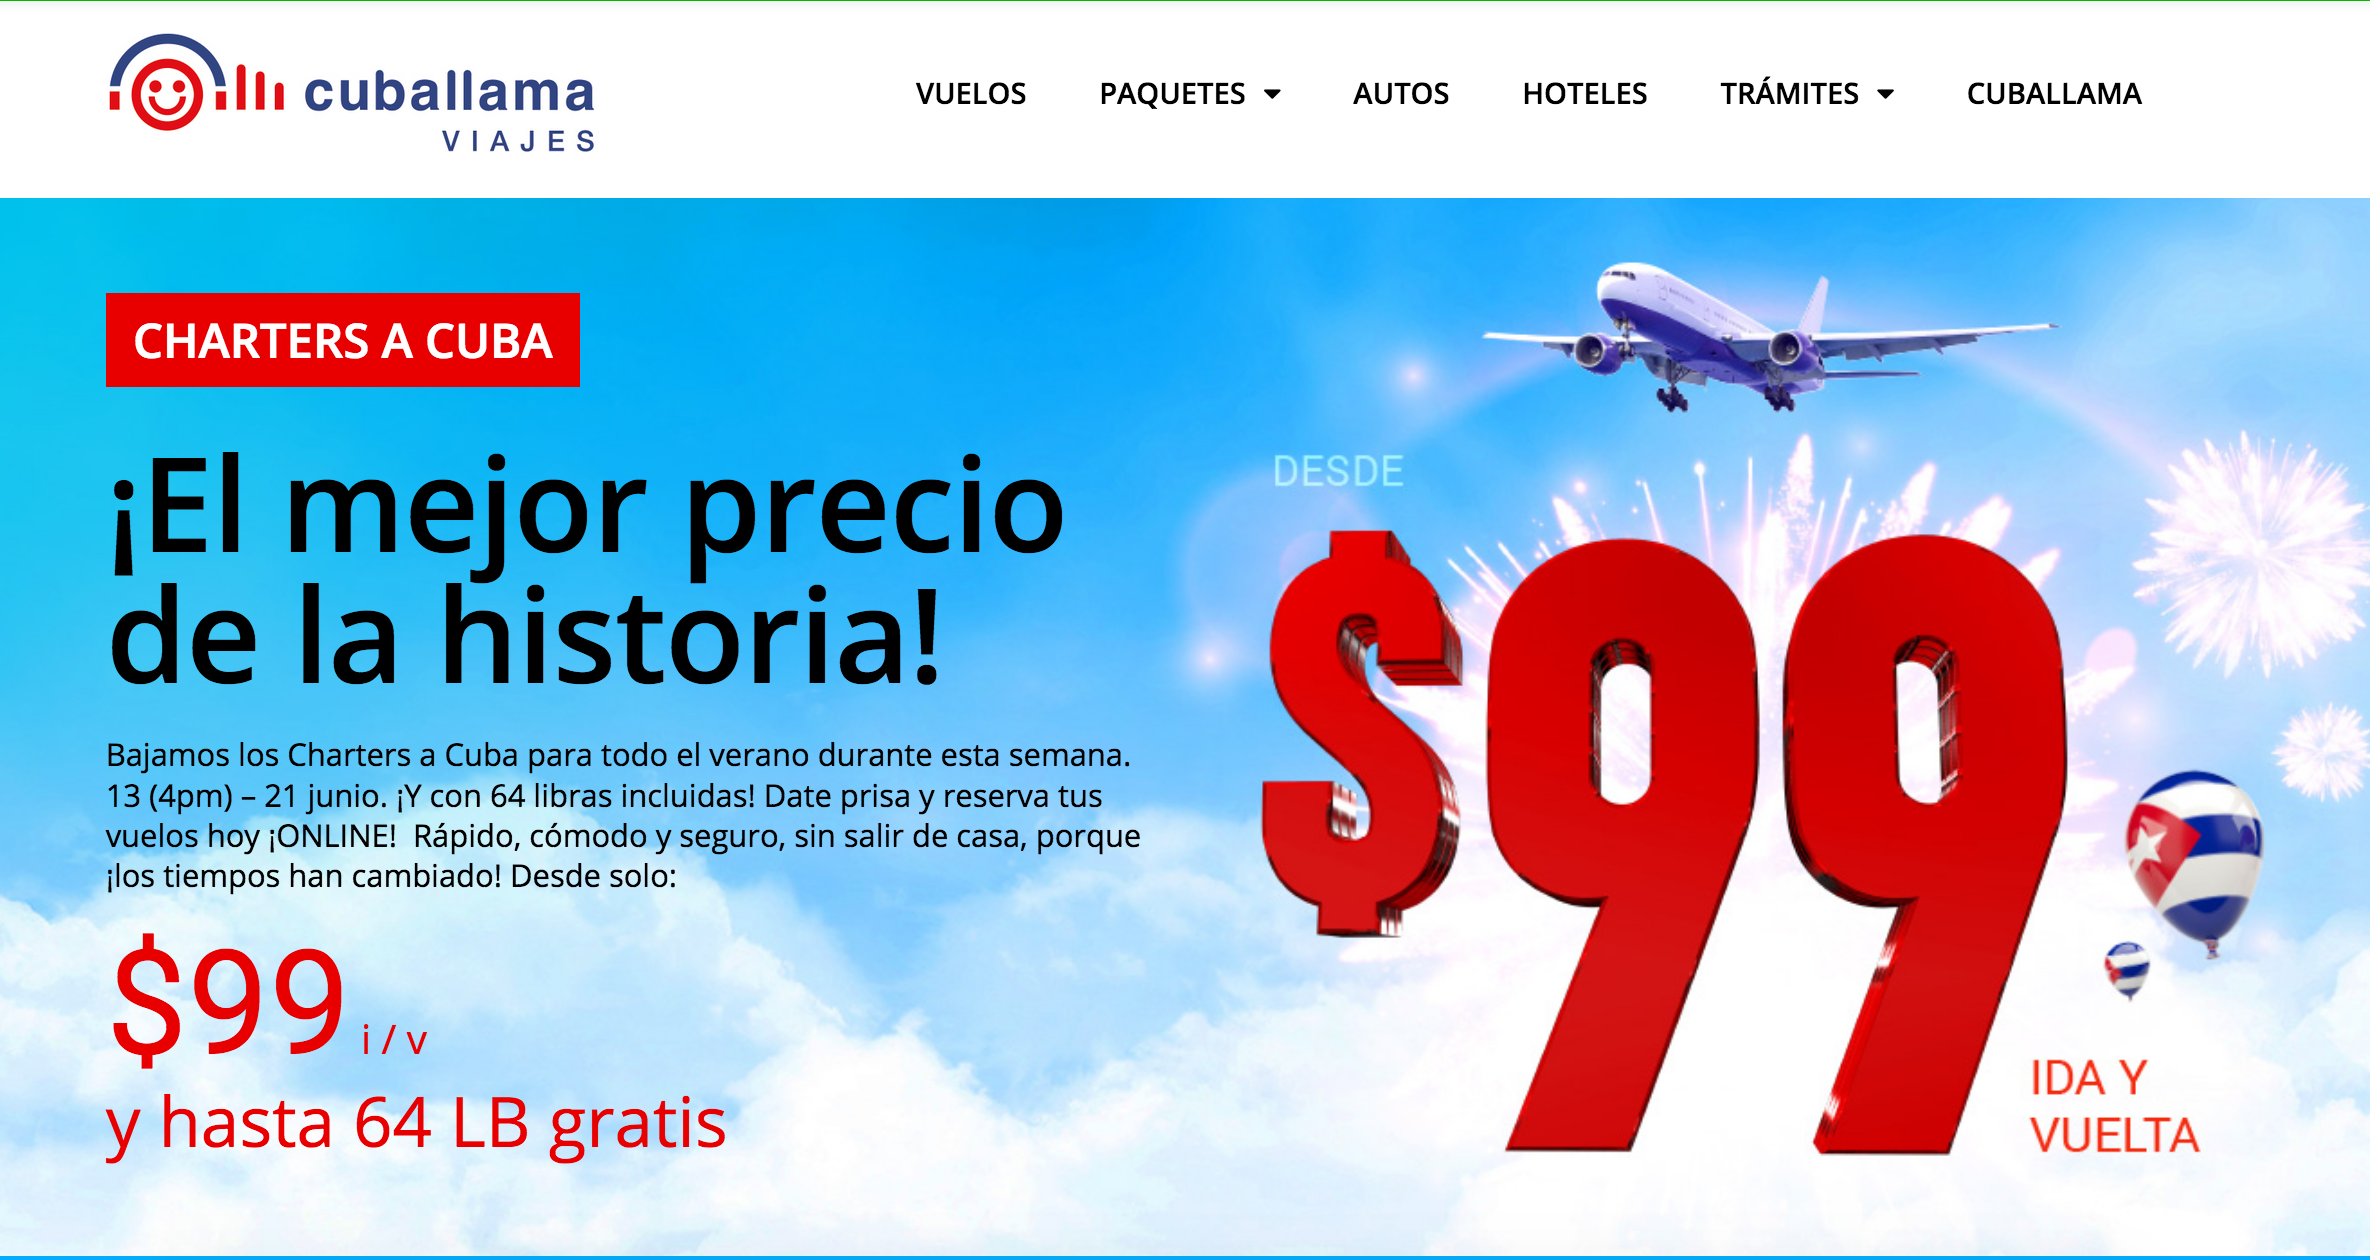 Compañía Cuballama ofrece vuelos ida y vuelta Miami-La Habana desde $99